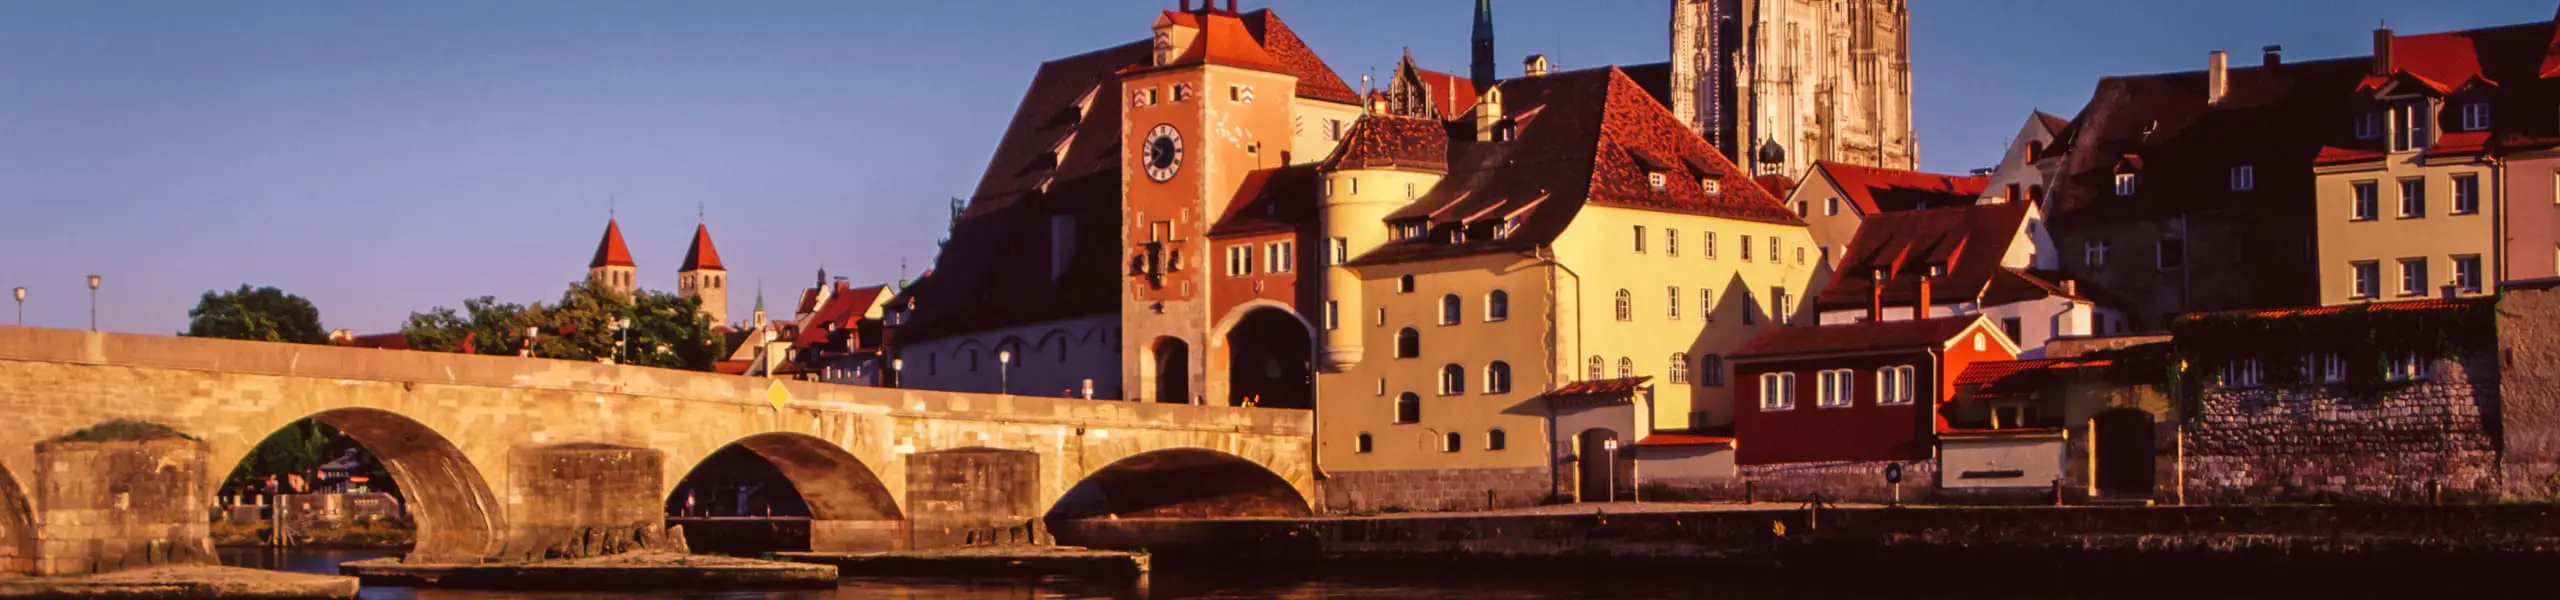 Die Stadt Regensburg hat zahlreiche Facetten und Geheimnisse. Teste dein Wissen über die Hauptstadt der Oberpfalz in unserem Quiz.